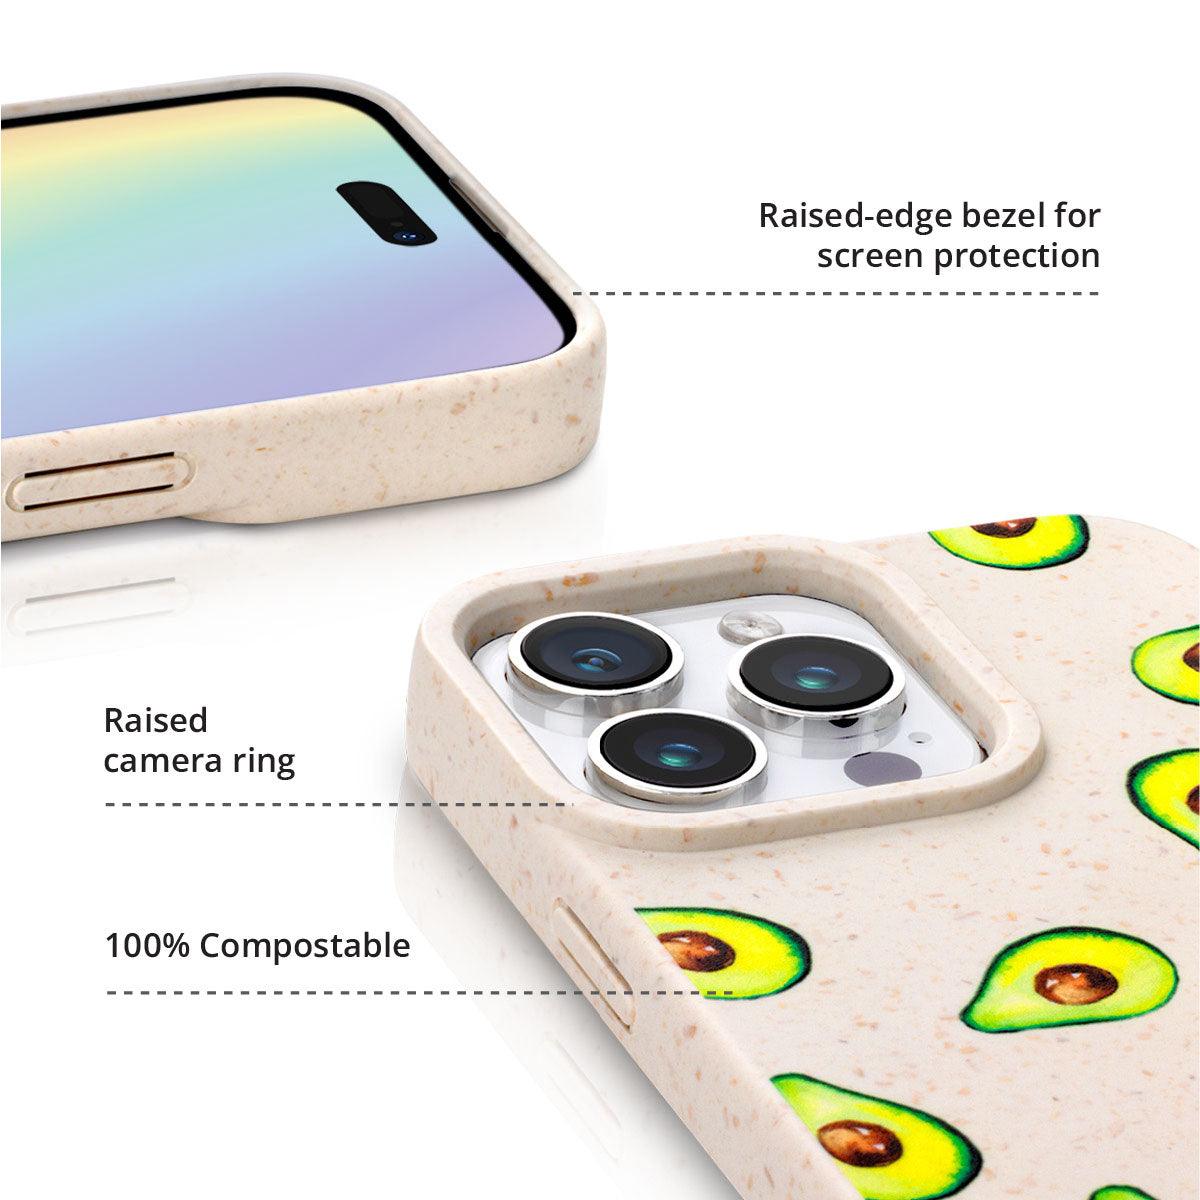 iPhone 14 Pro Lemon Squeezy Eco Phone Case - CORECOLOUR